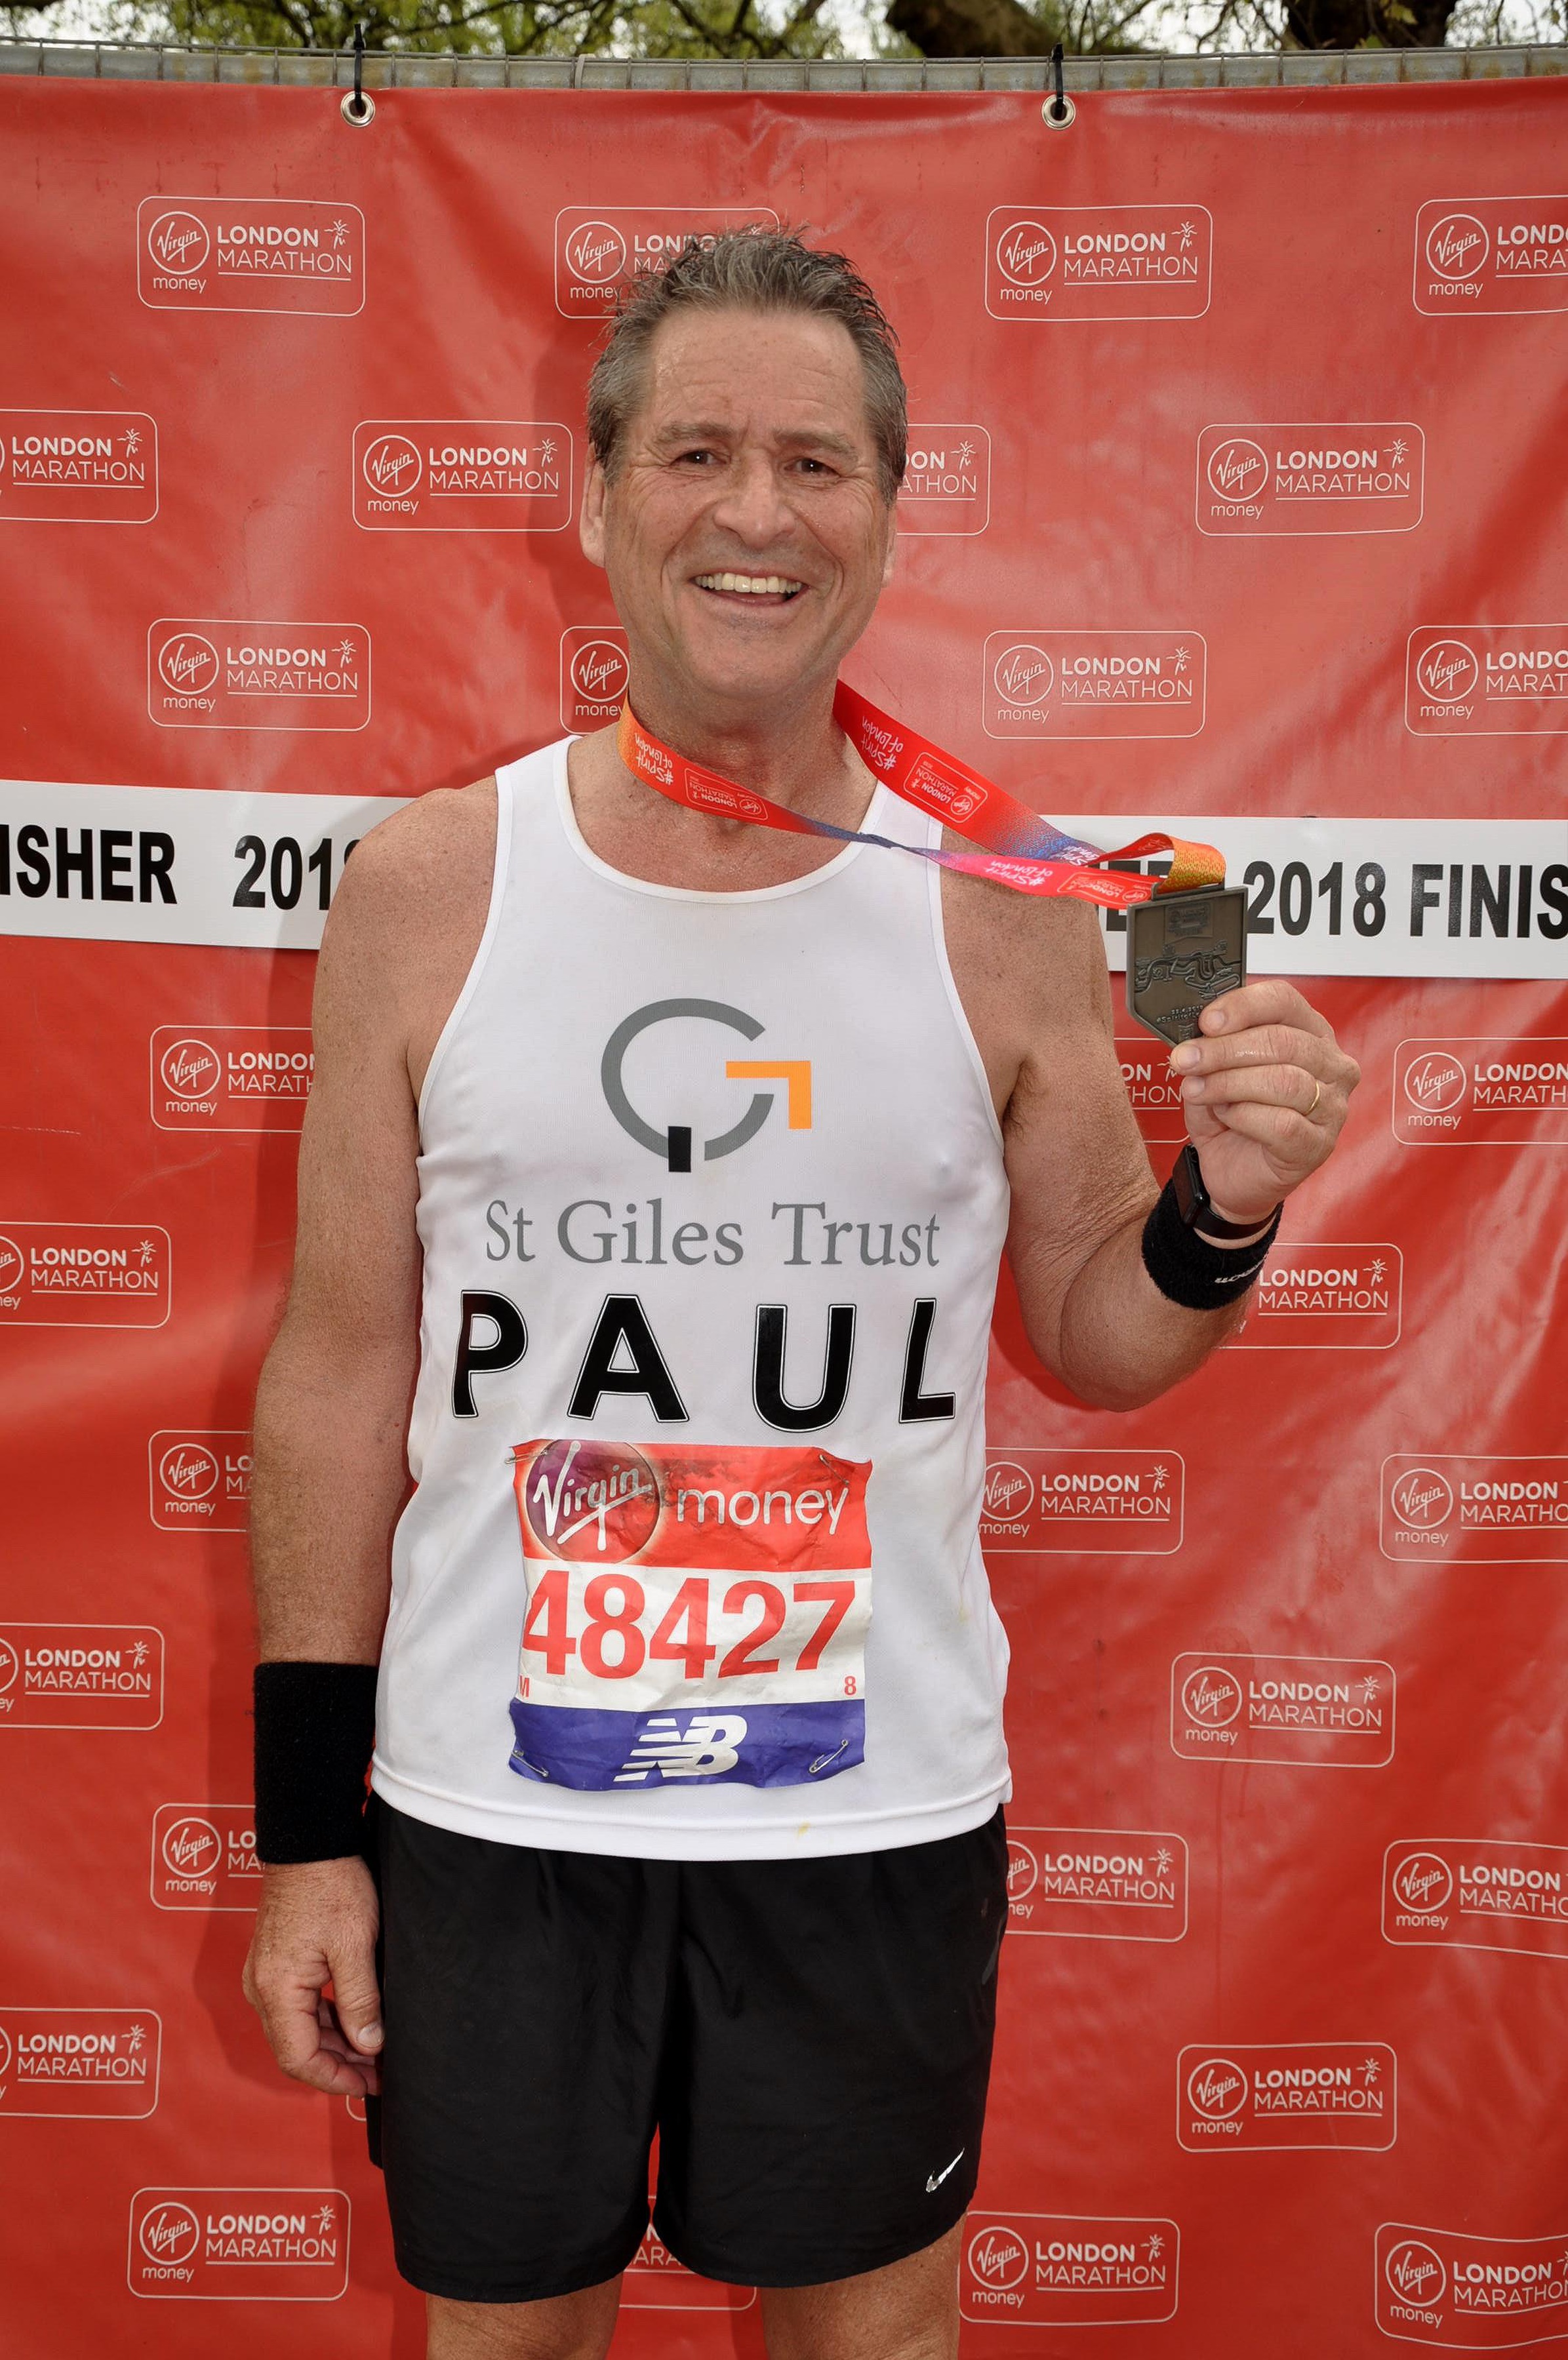 Paul - London Marathon 2018 - 01